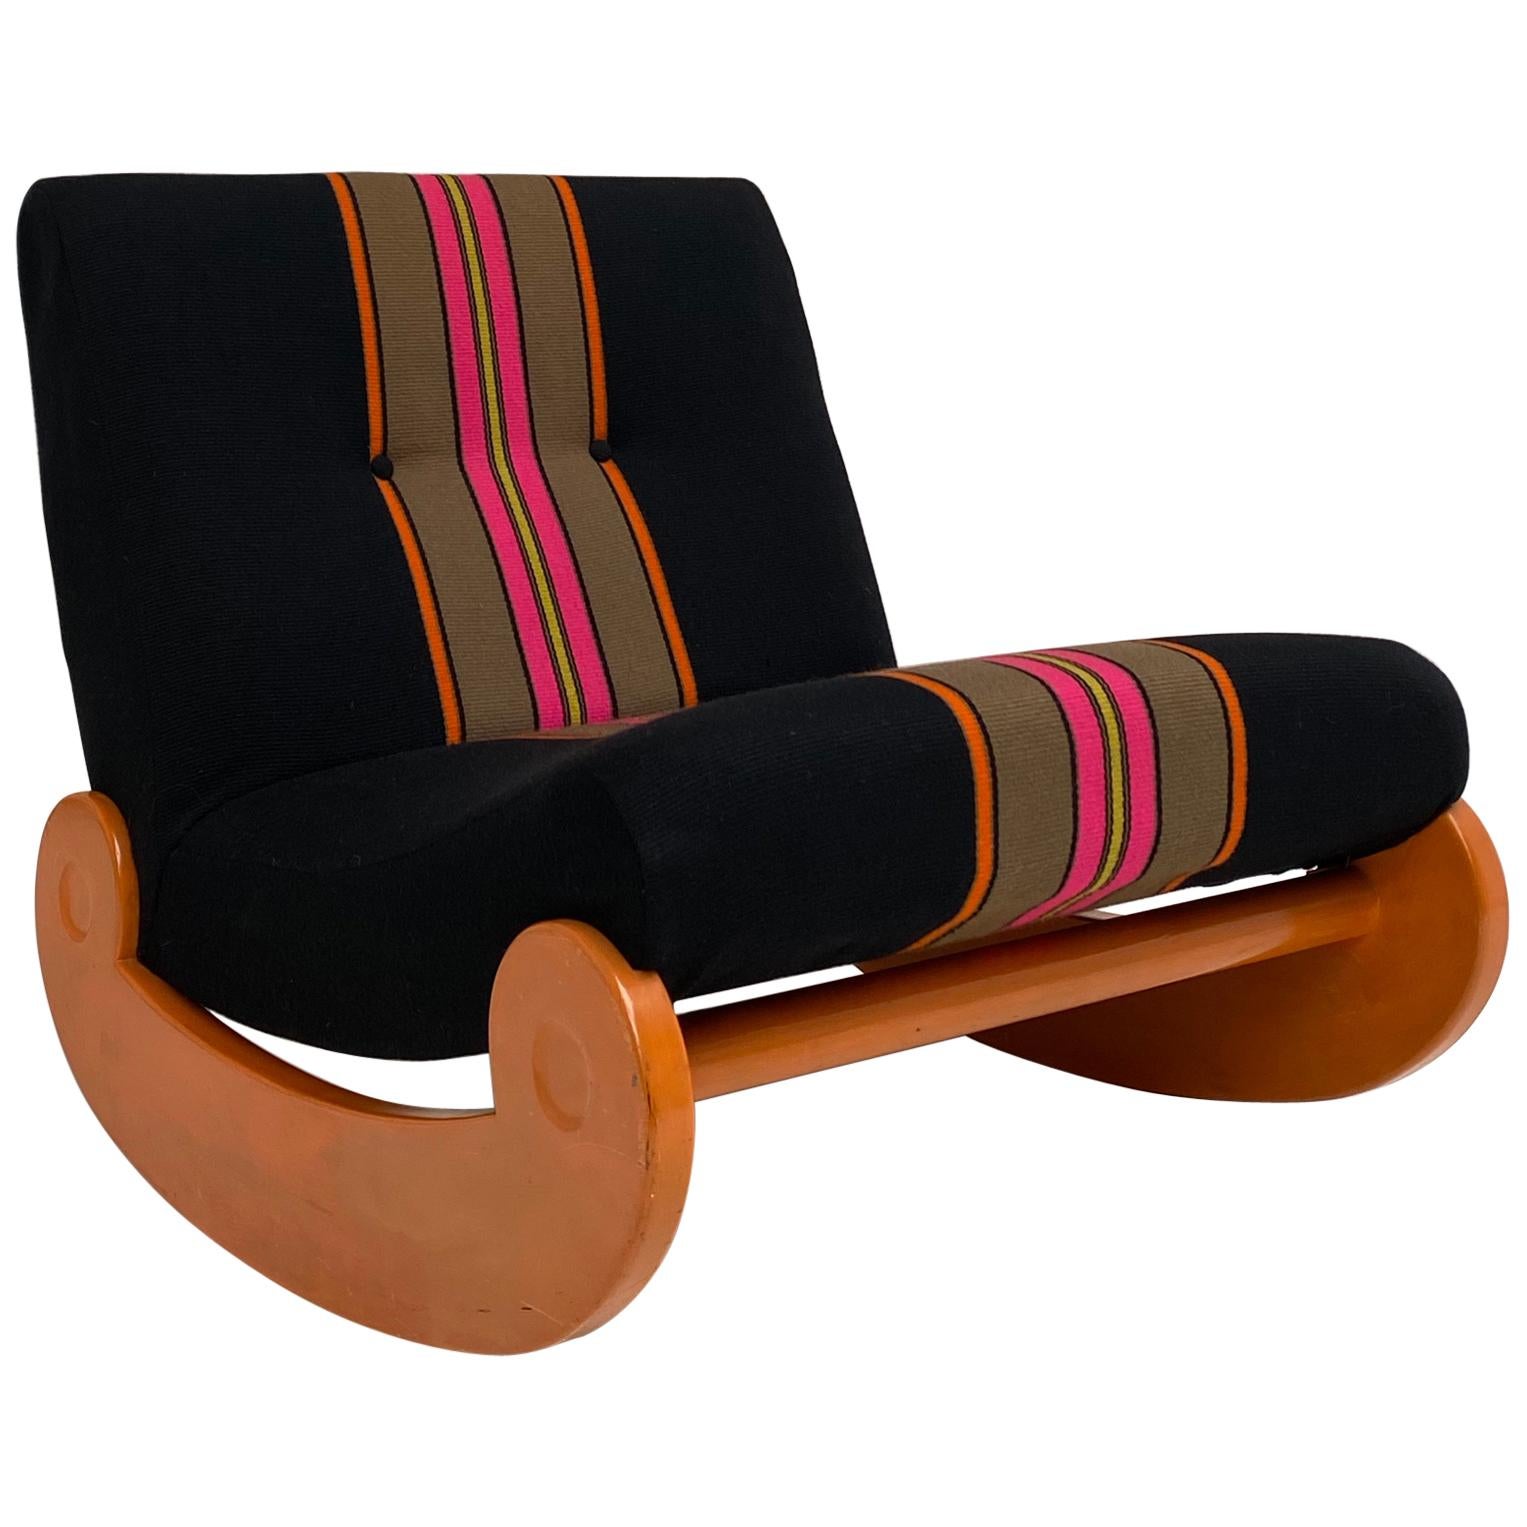 Chaise longue à bascule en tissu de laine, d'origine, premier propriétaire, Allemagne, vers 1970